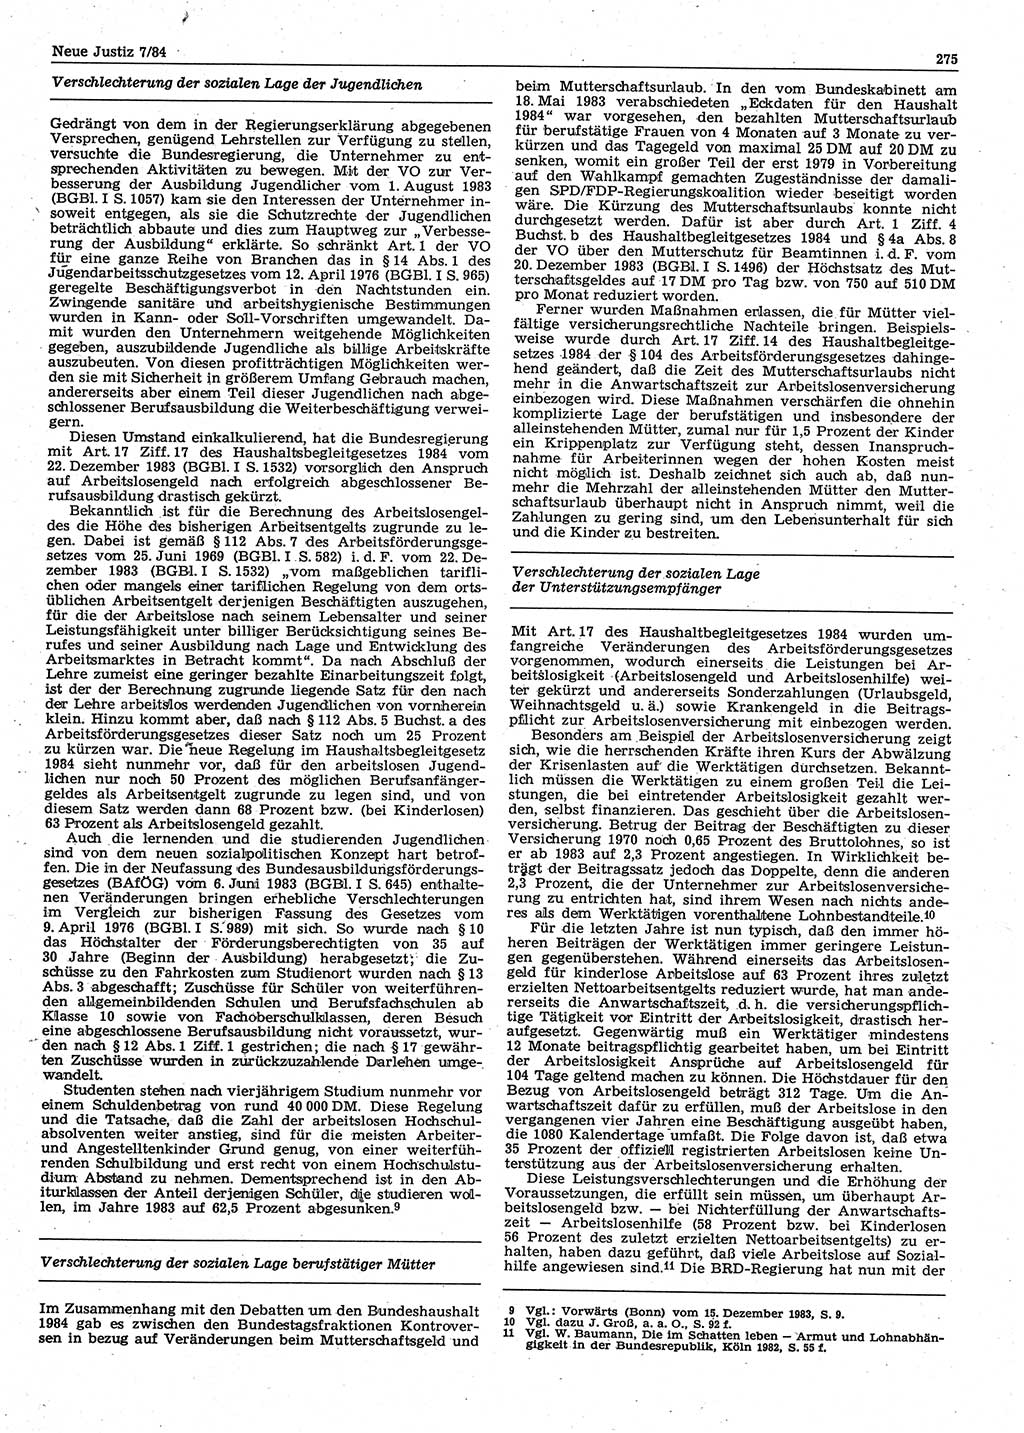 Neue Justiz (NJ), Zeitschrift für sozialistisches Recht und Gesetzlichkeit [Deutsche Demokratische Republik (DDR)], 38. Jahrgang 1984, Seite 275 (NJ DDR 1984, S. 275)